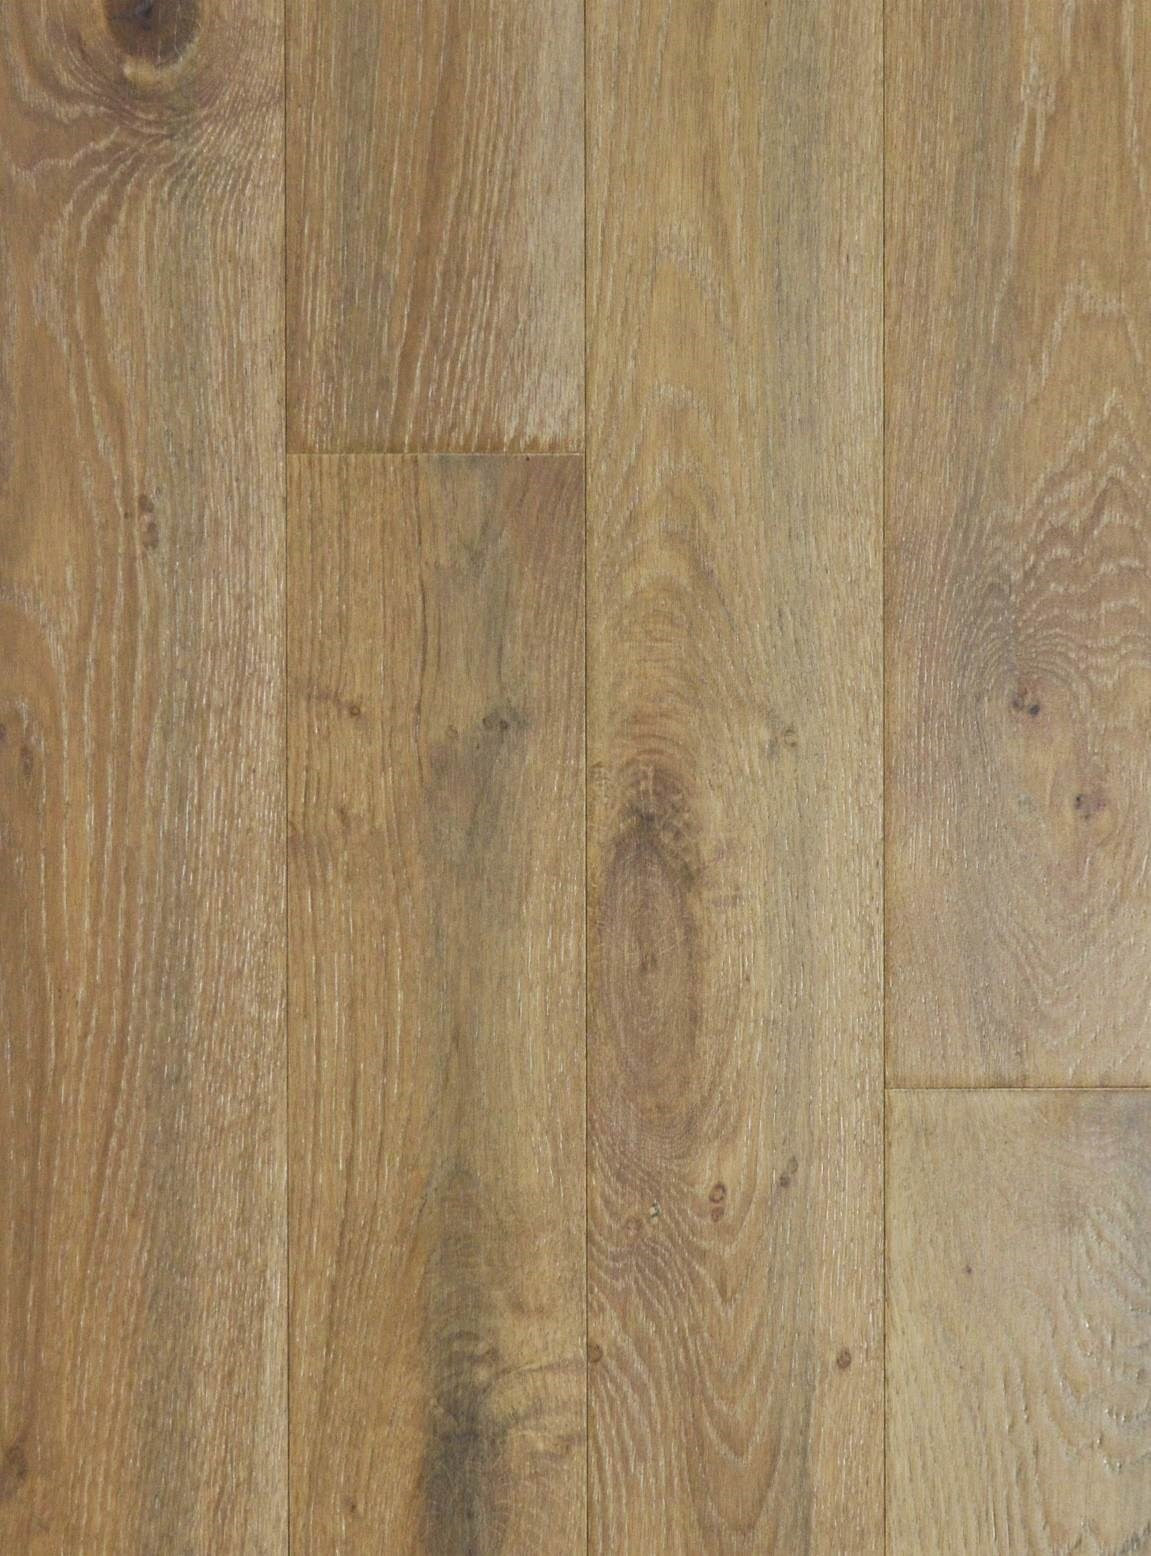 23 Awesome Bj Hardwood Flooring 2024 free download bj hardwood flooring of lm flooring for print image